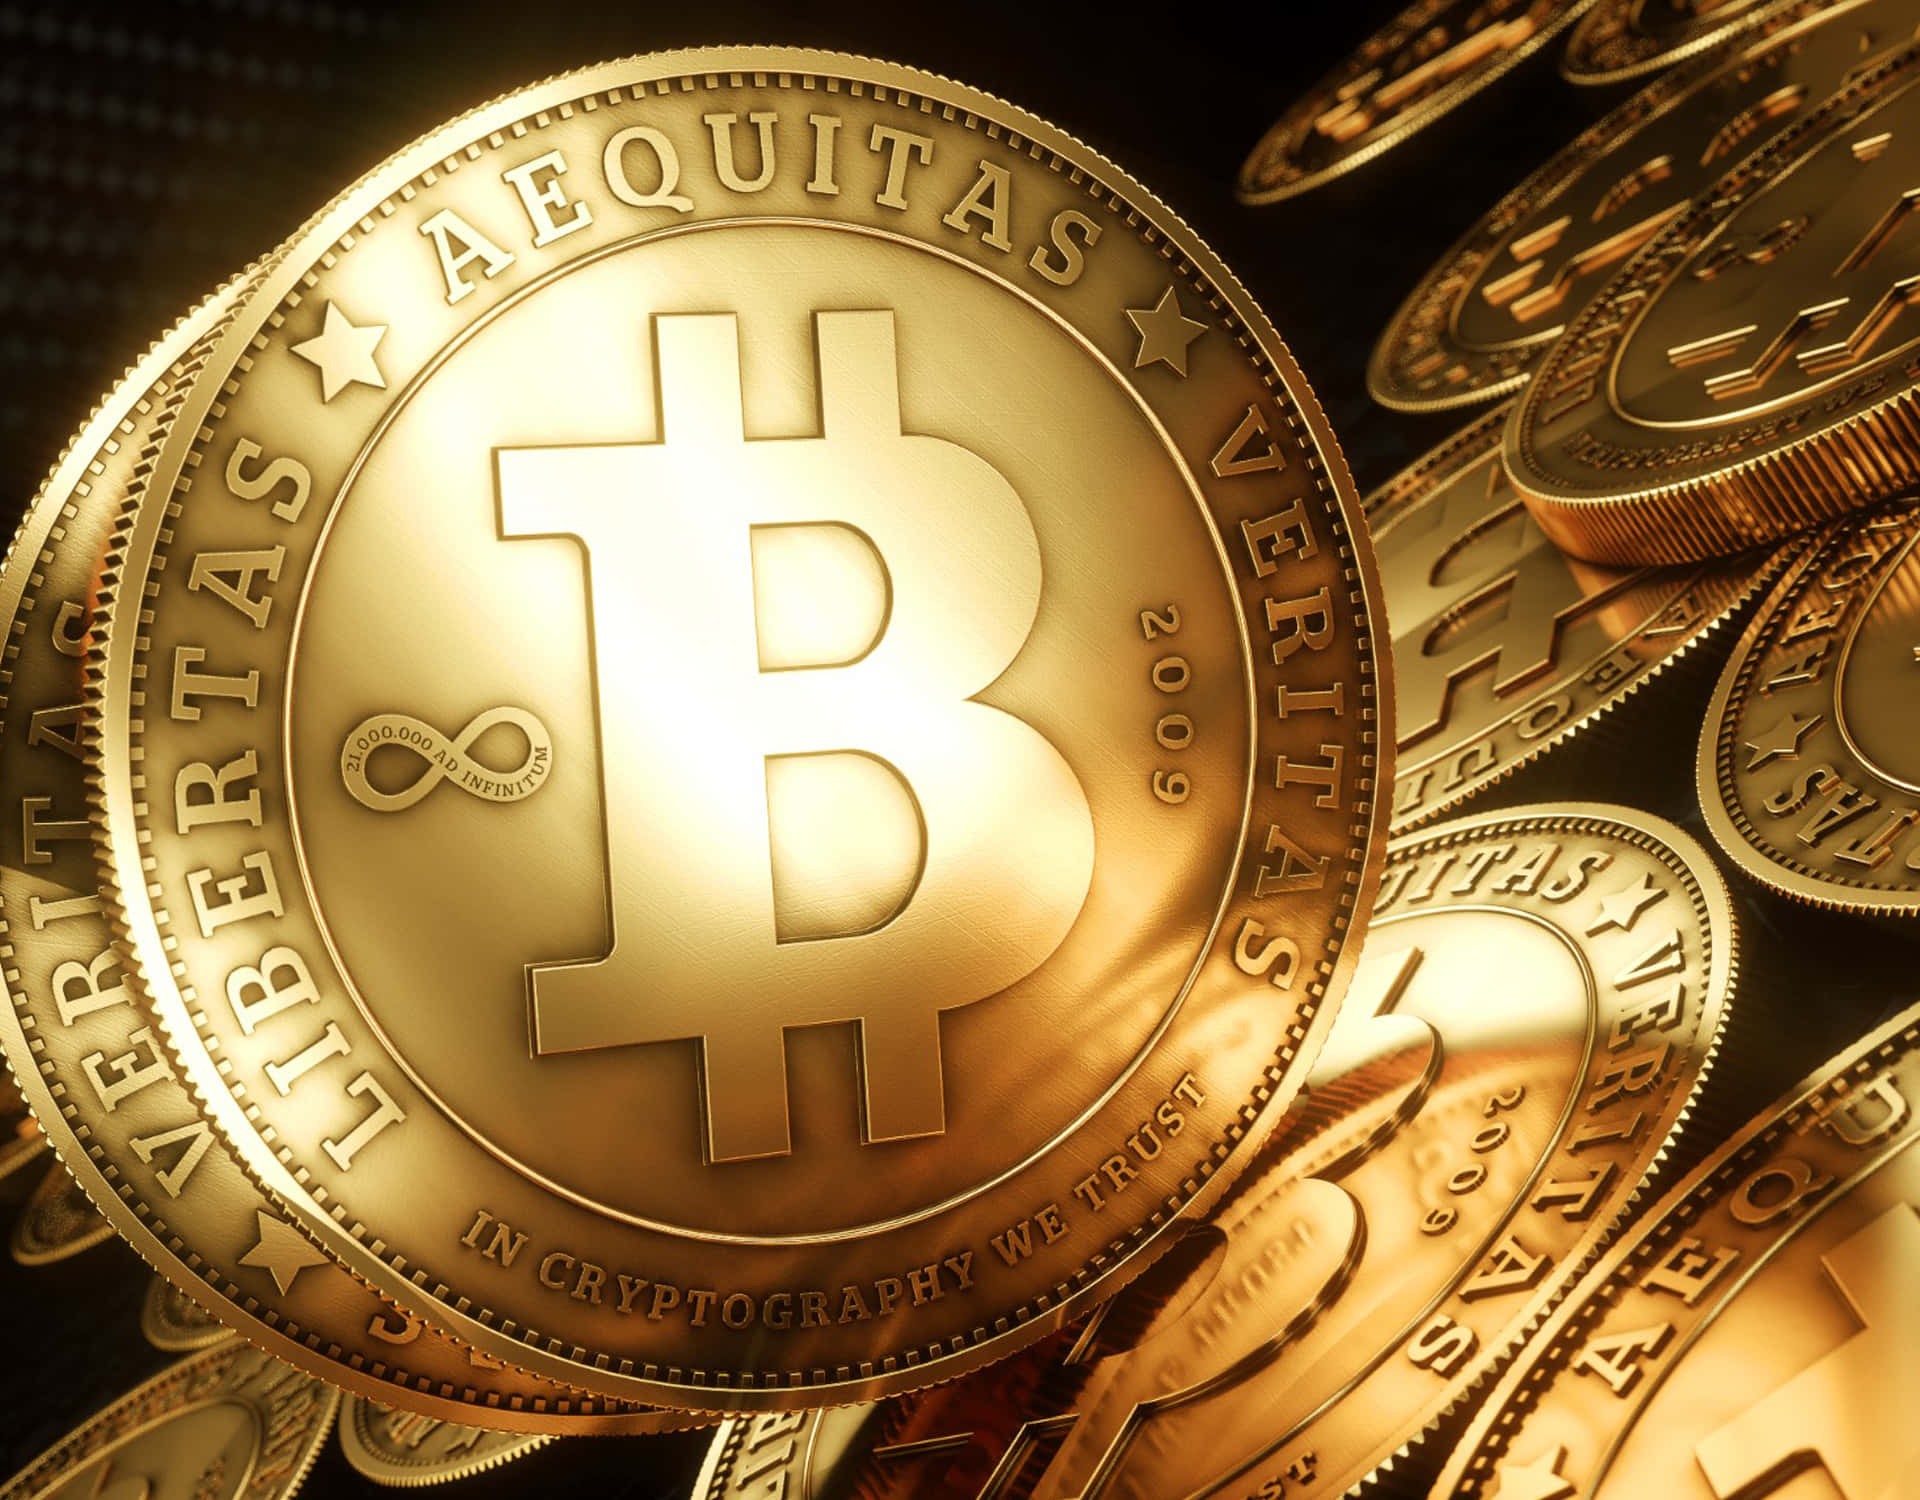 The Digital Gold - Bitcoin